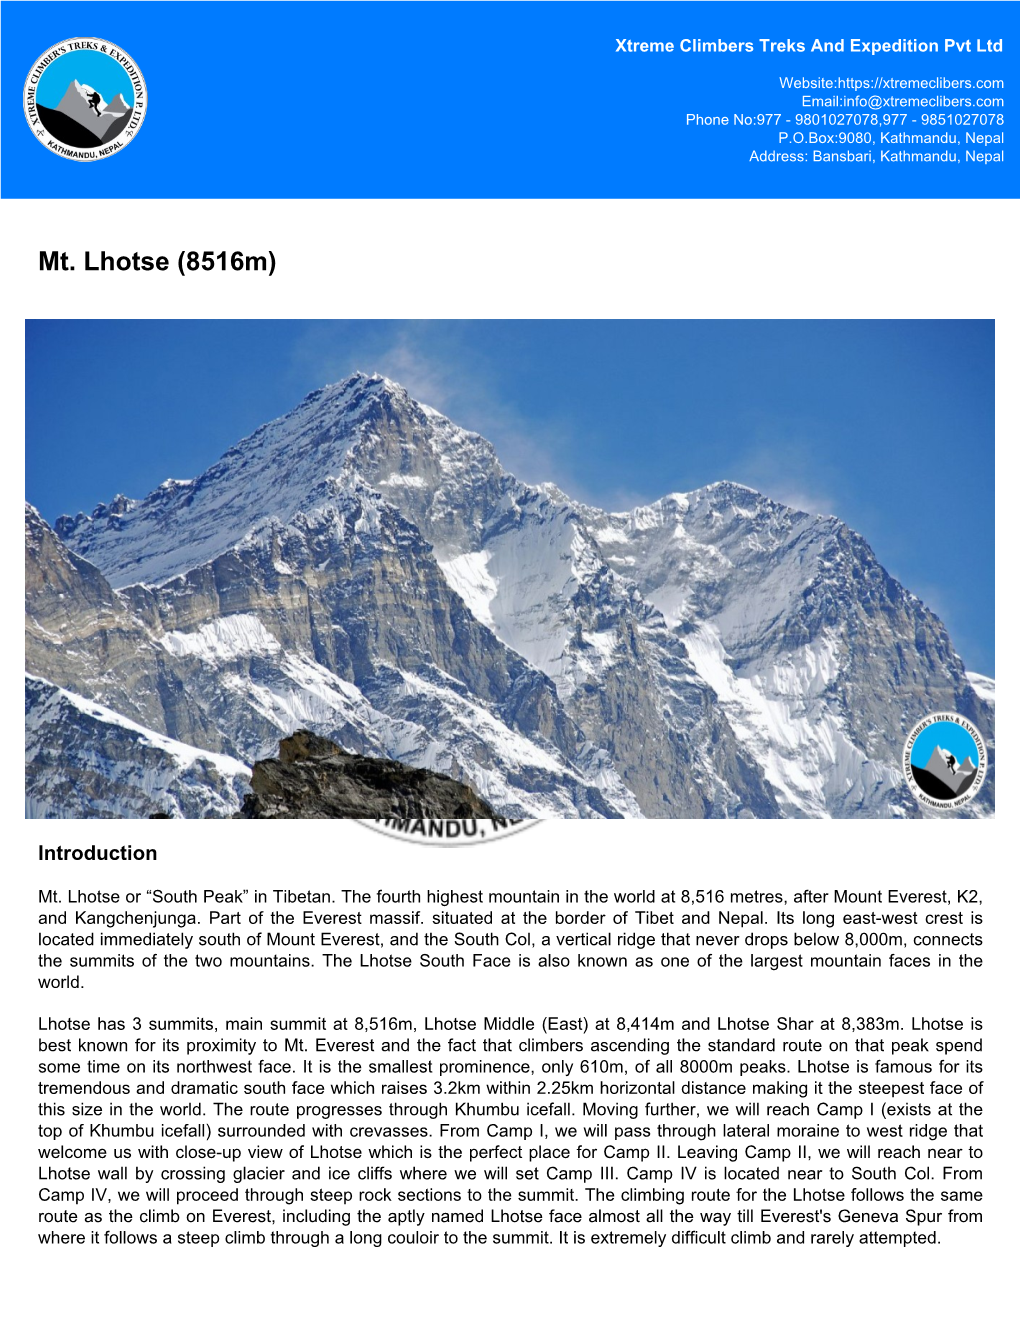 Mt. Lhotse (8516M)